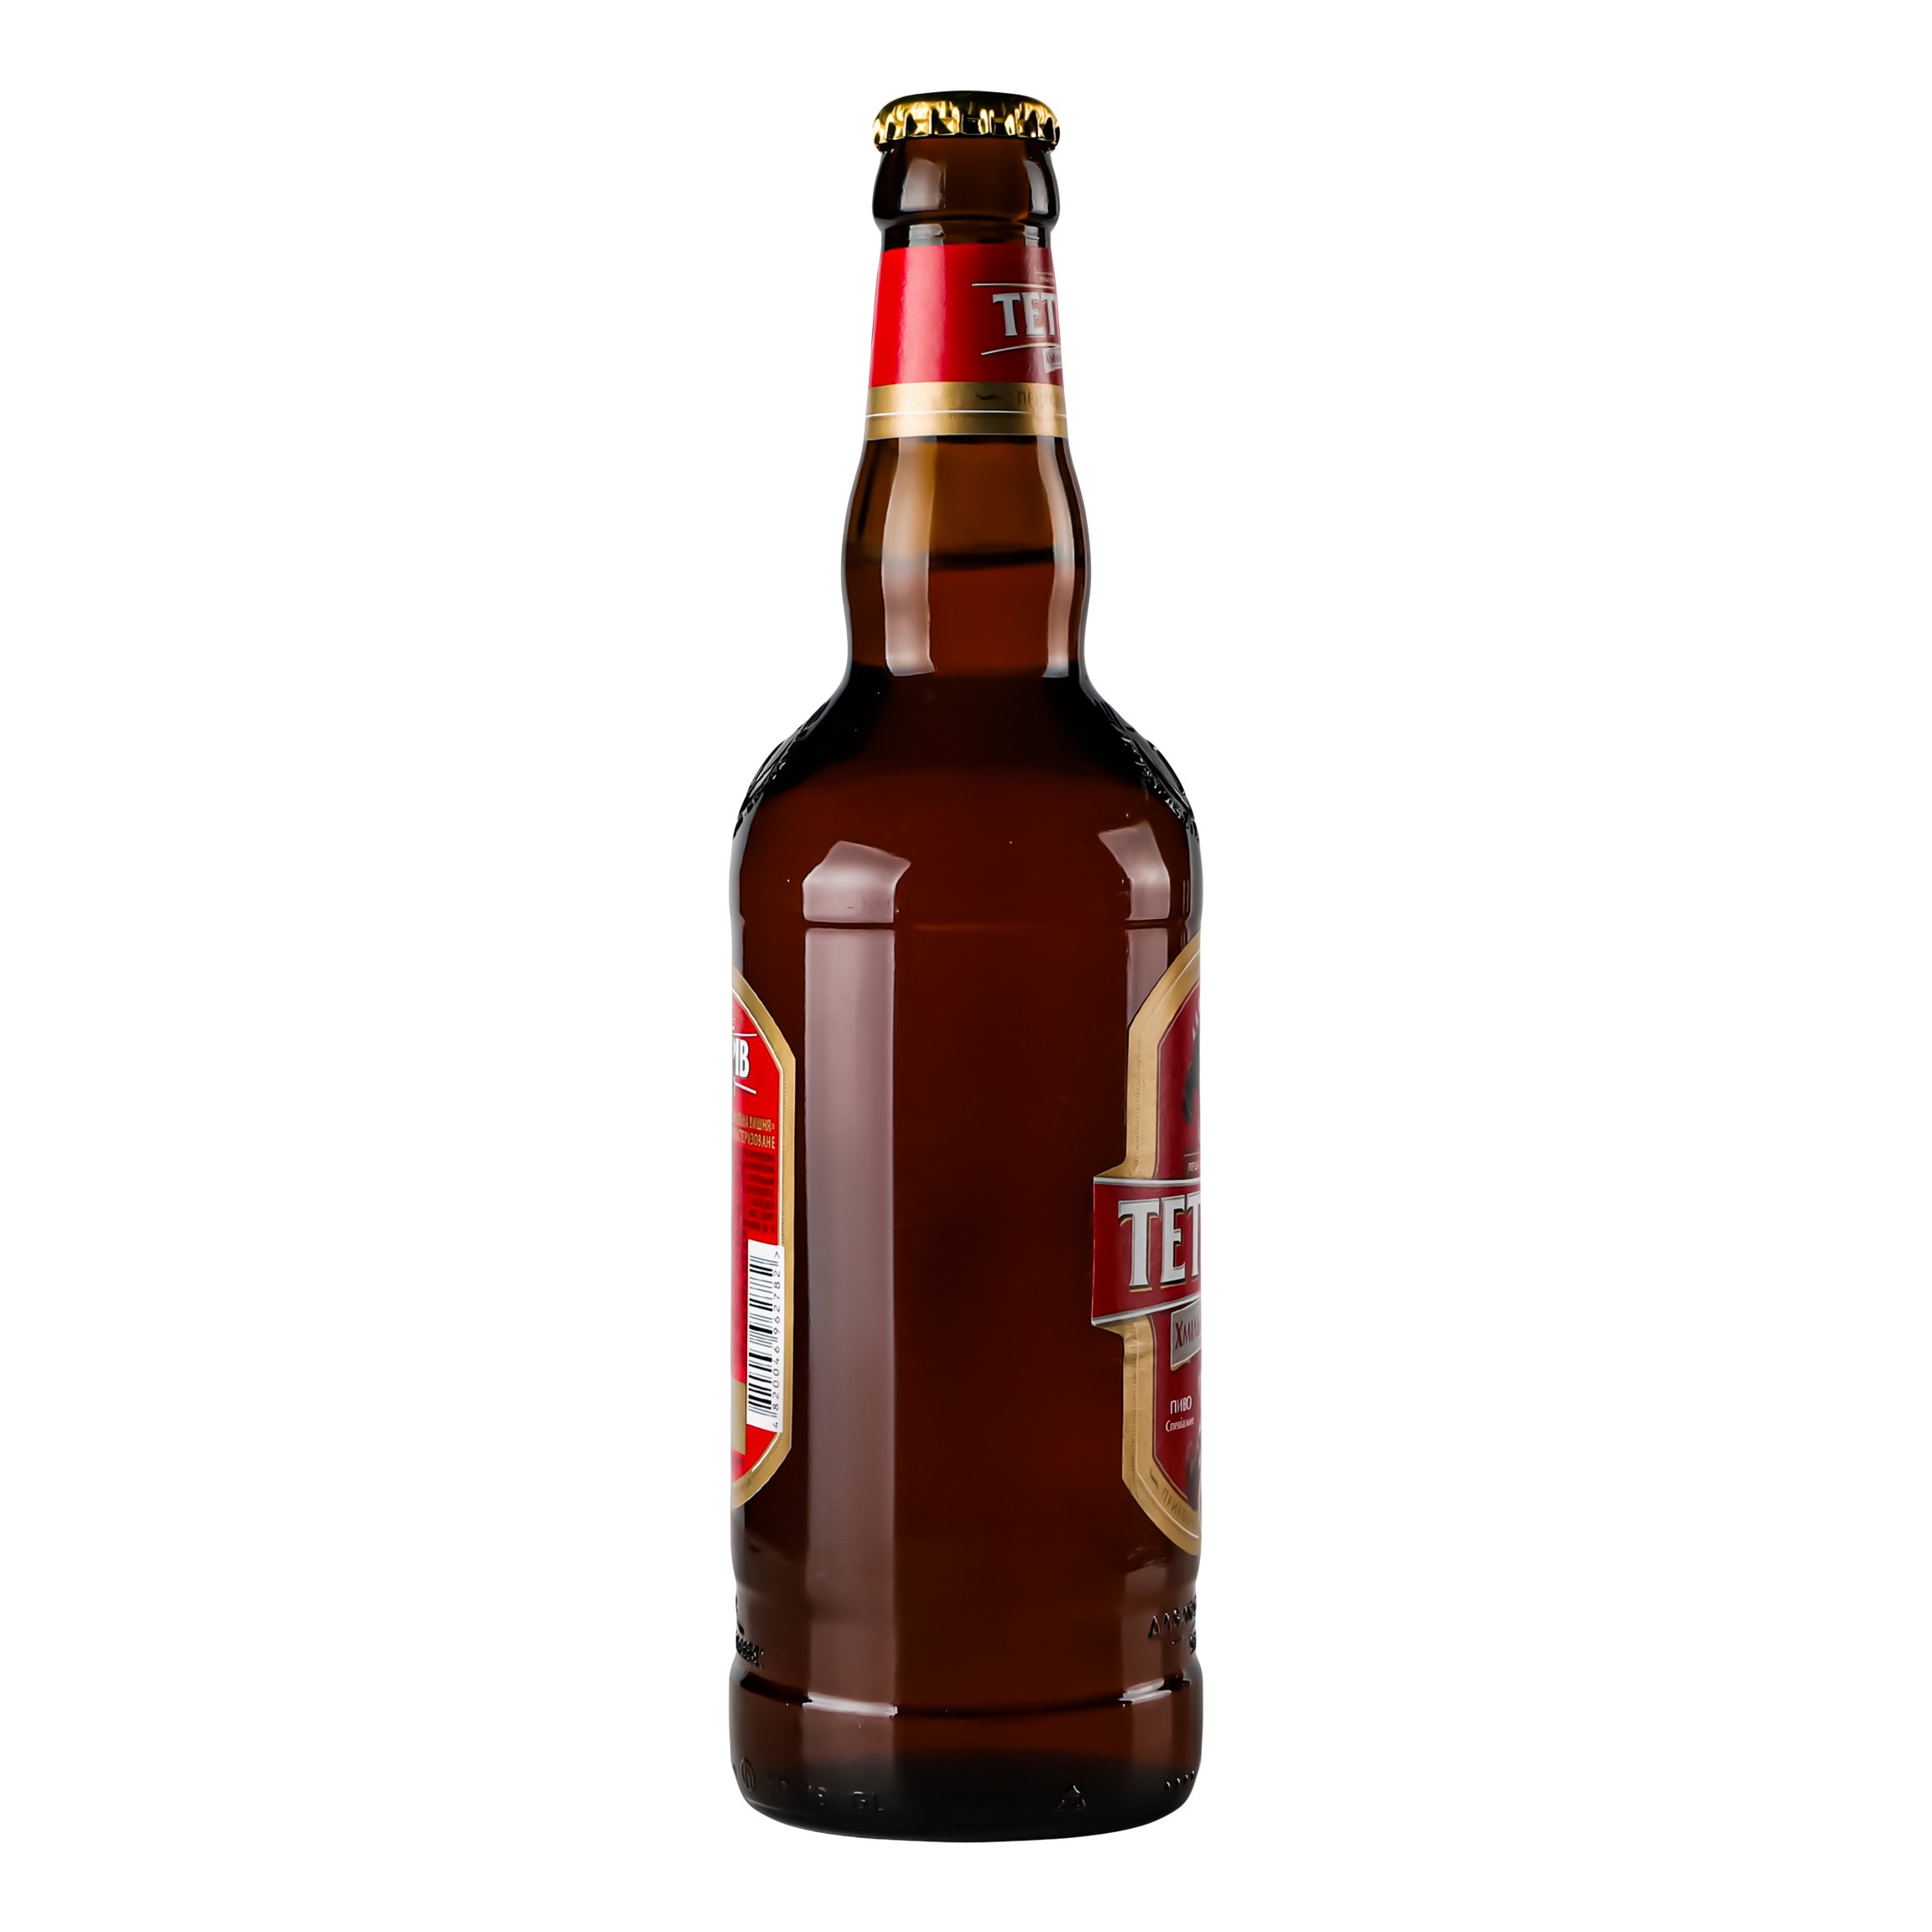 Пиво Тетерів Хмельная вишня, полутемное, 8%, 0,5 л (770494) - фото 4